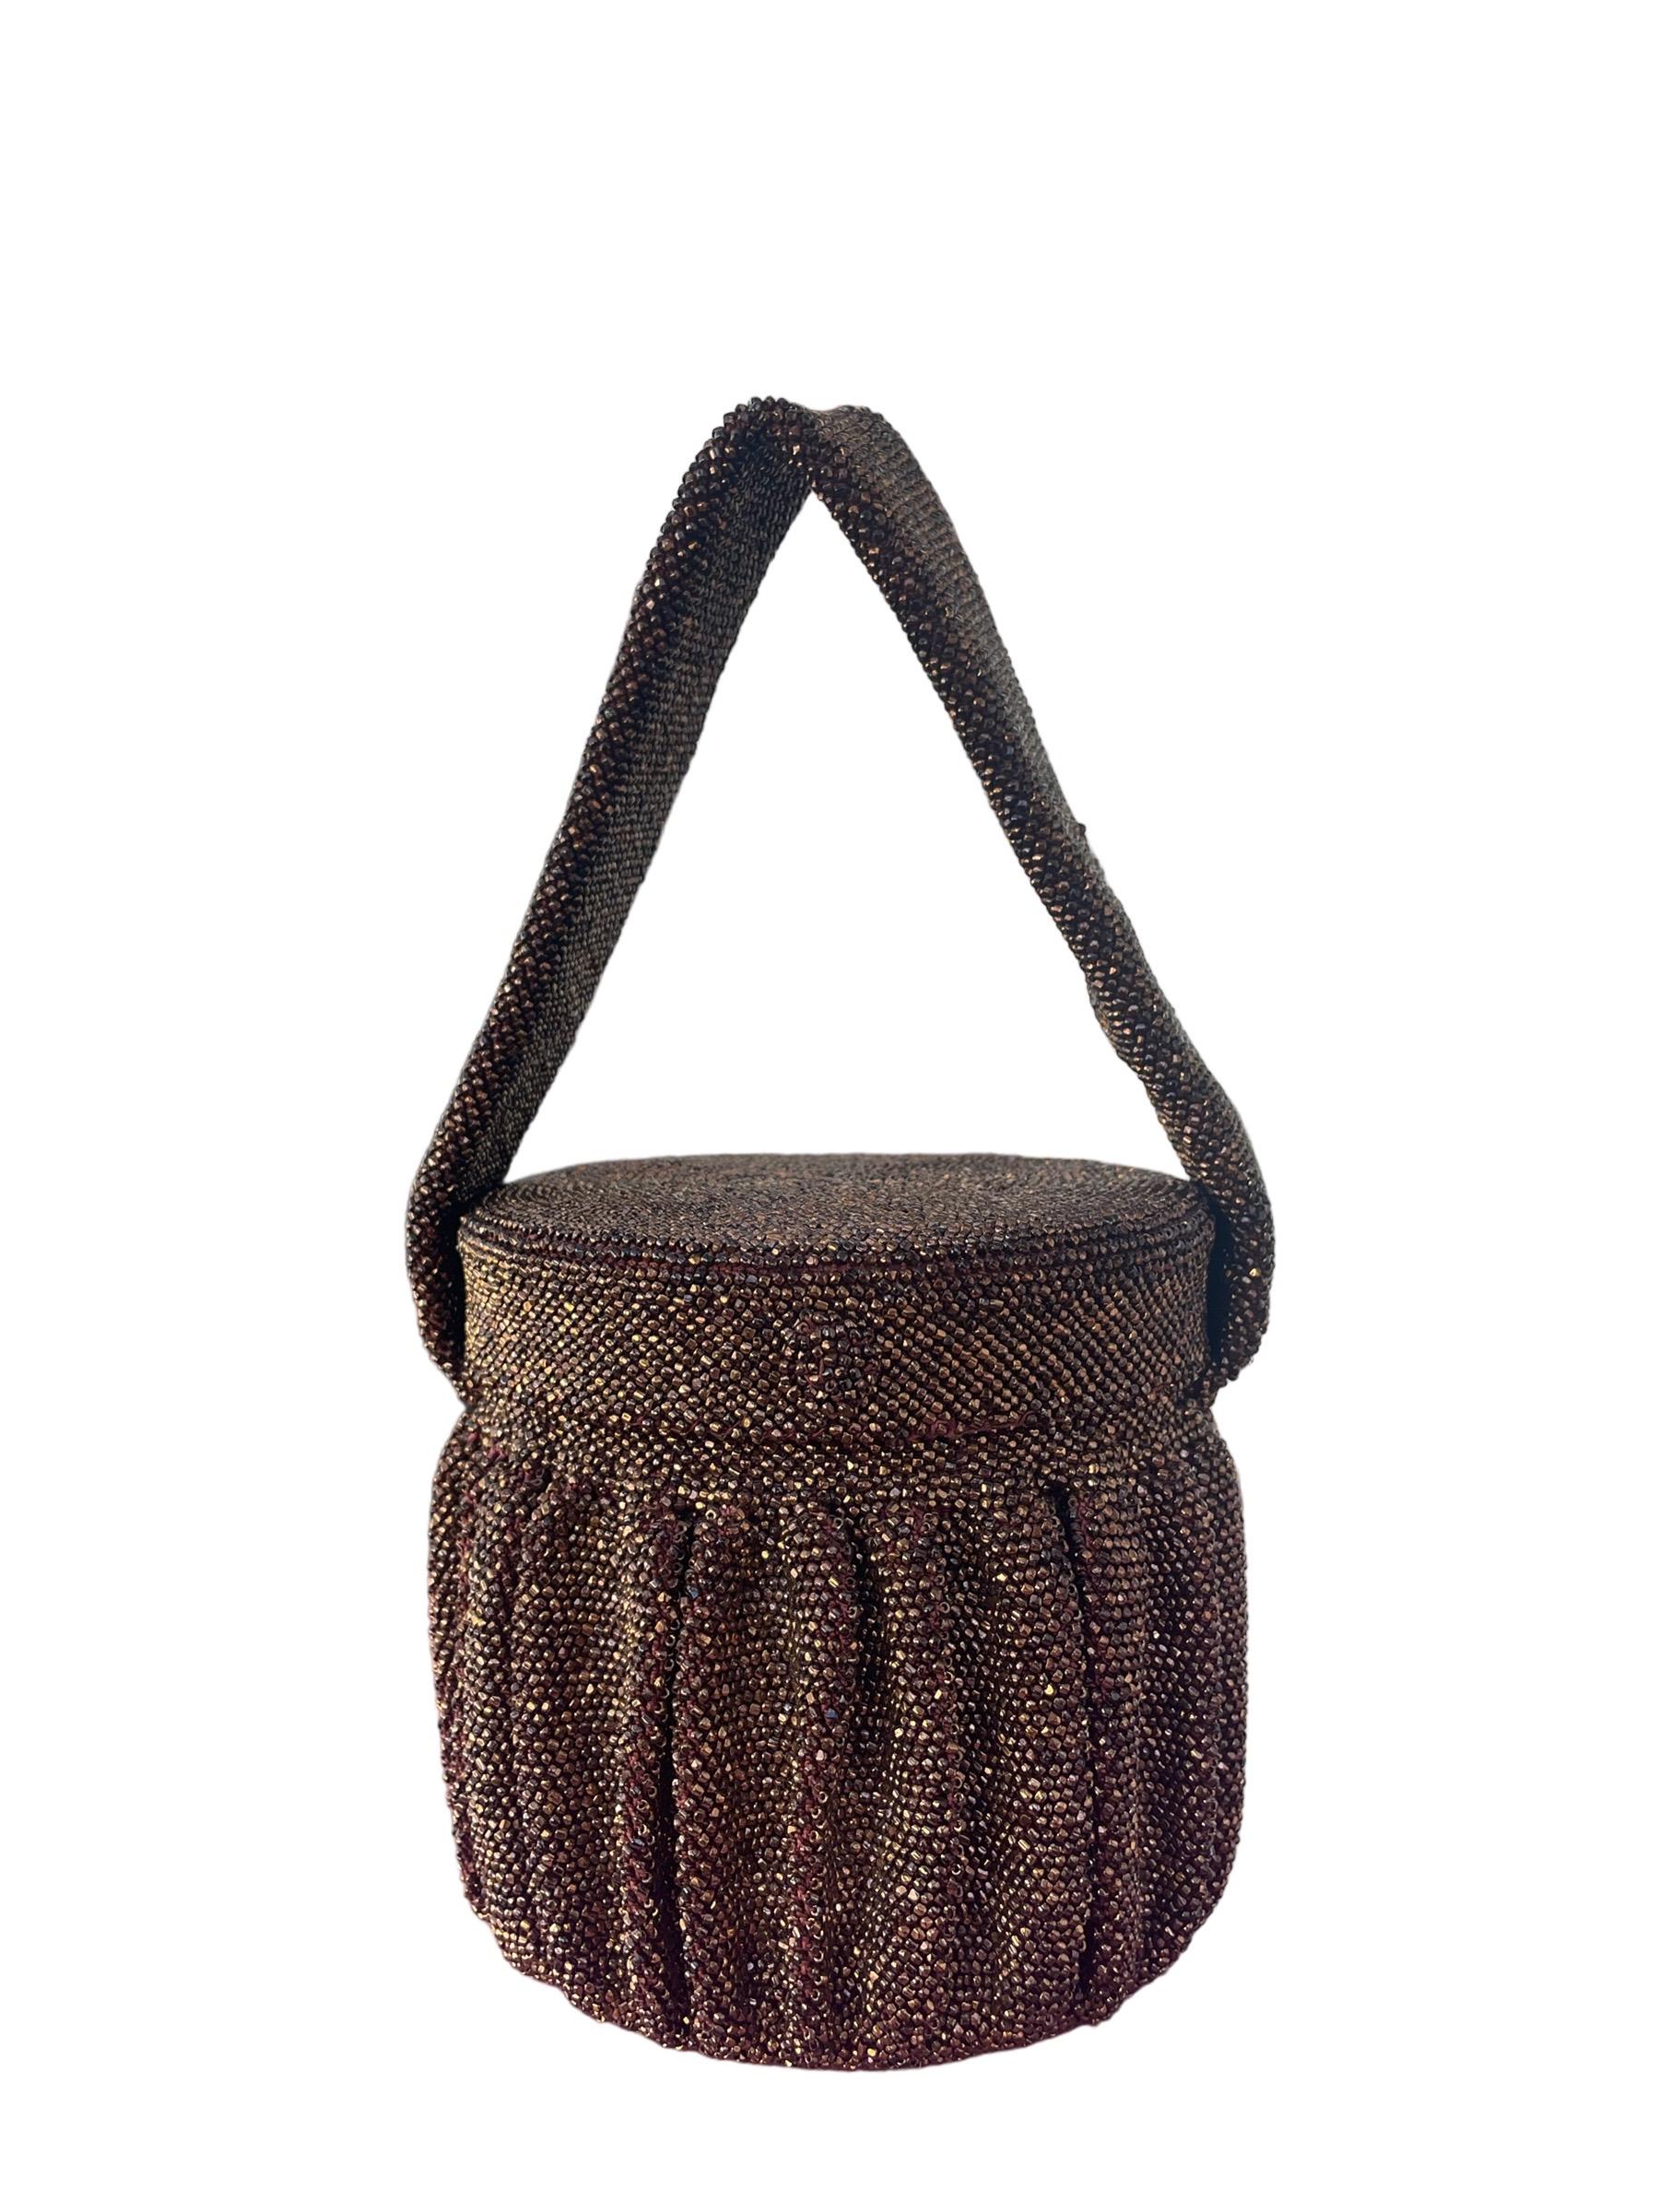 1940s Bronze Steel Cut Bead Circular Box Bag w/ Mirror

Sac seau de forme circulaire avec extérieur en perles de verre bronze et détails plissés.

Couvercle attaché avec miroir circulaire à l'intérieur. Intérieur en satin marron. Quelques taches